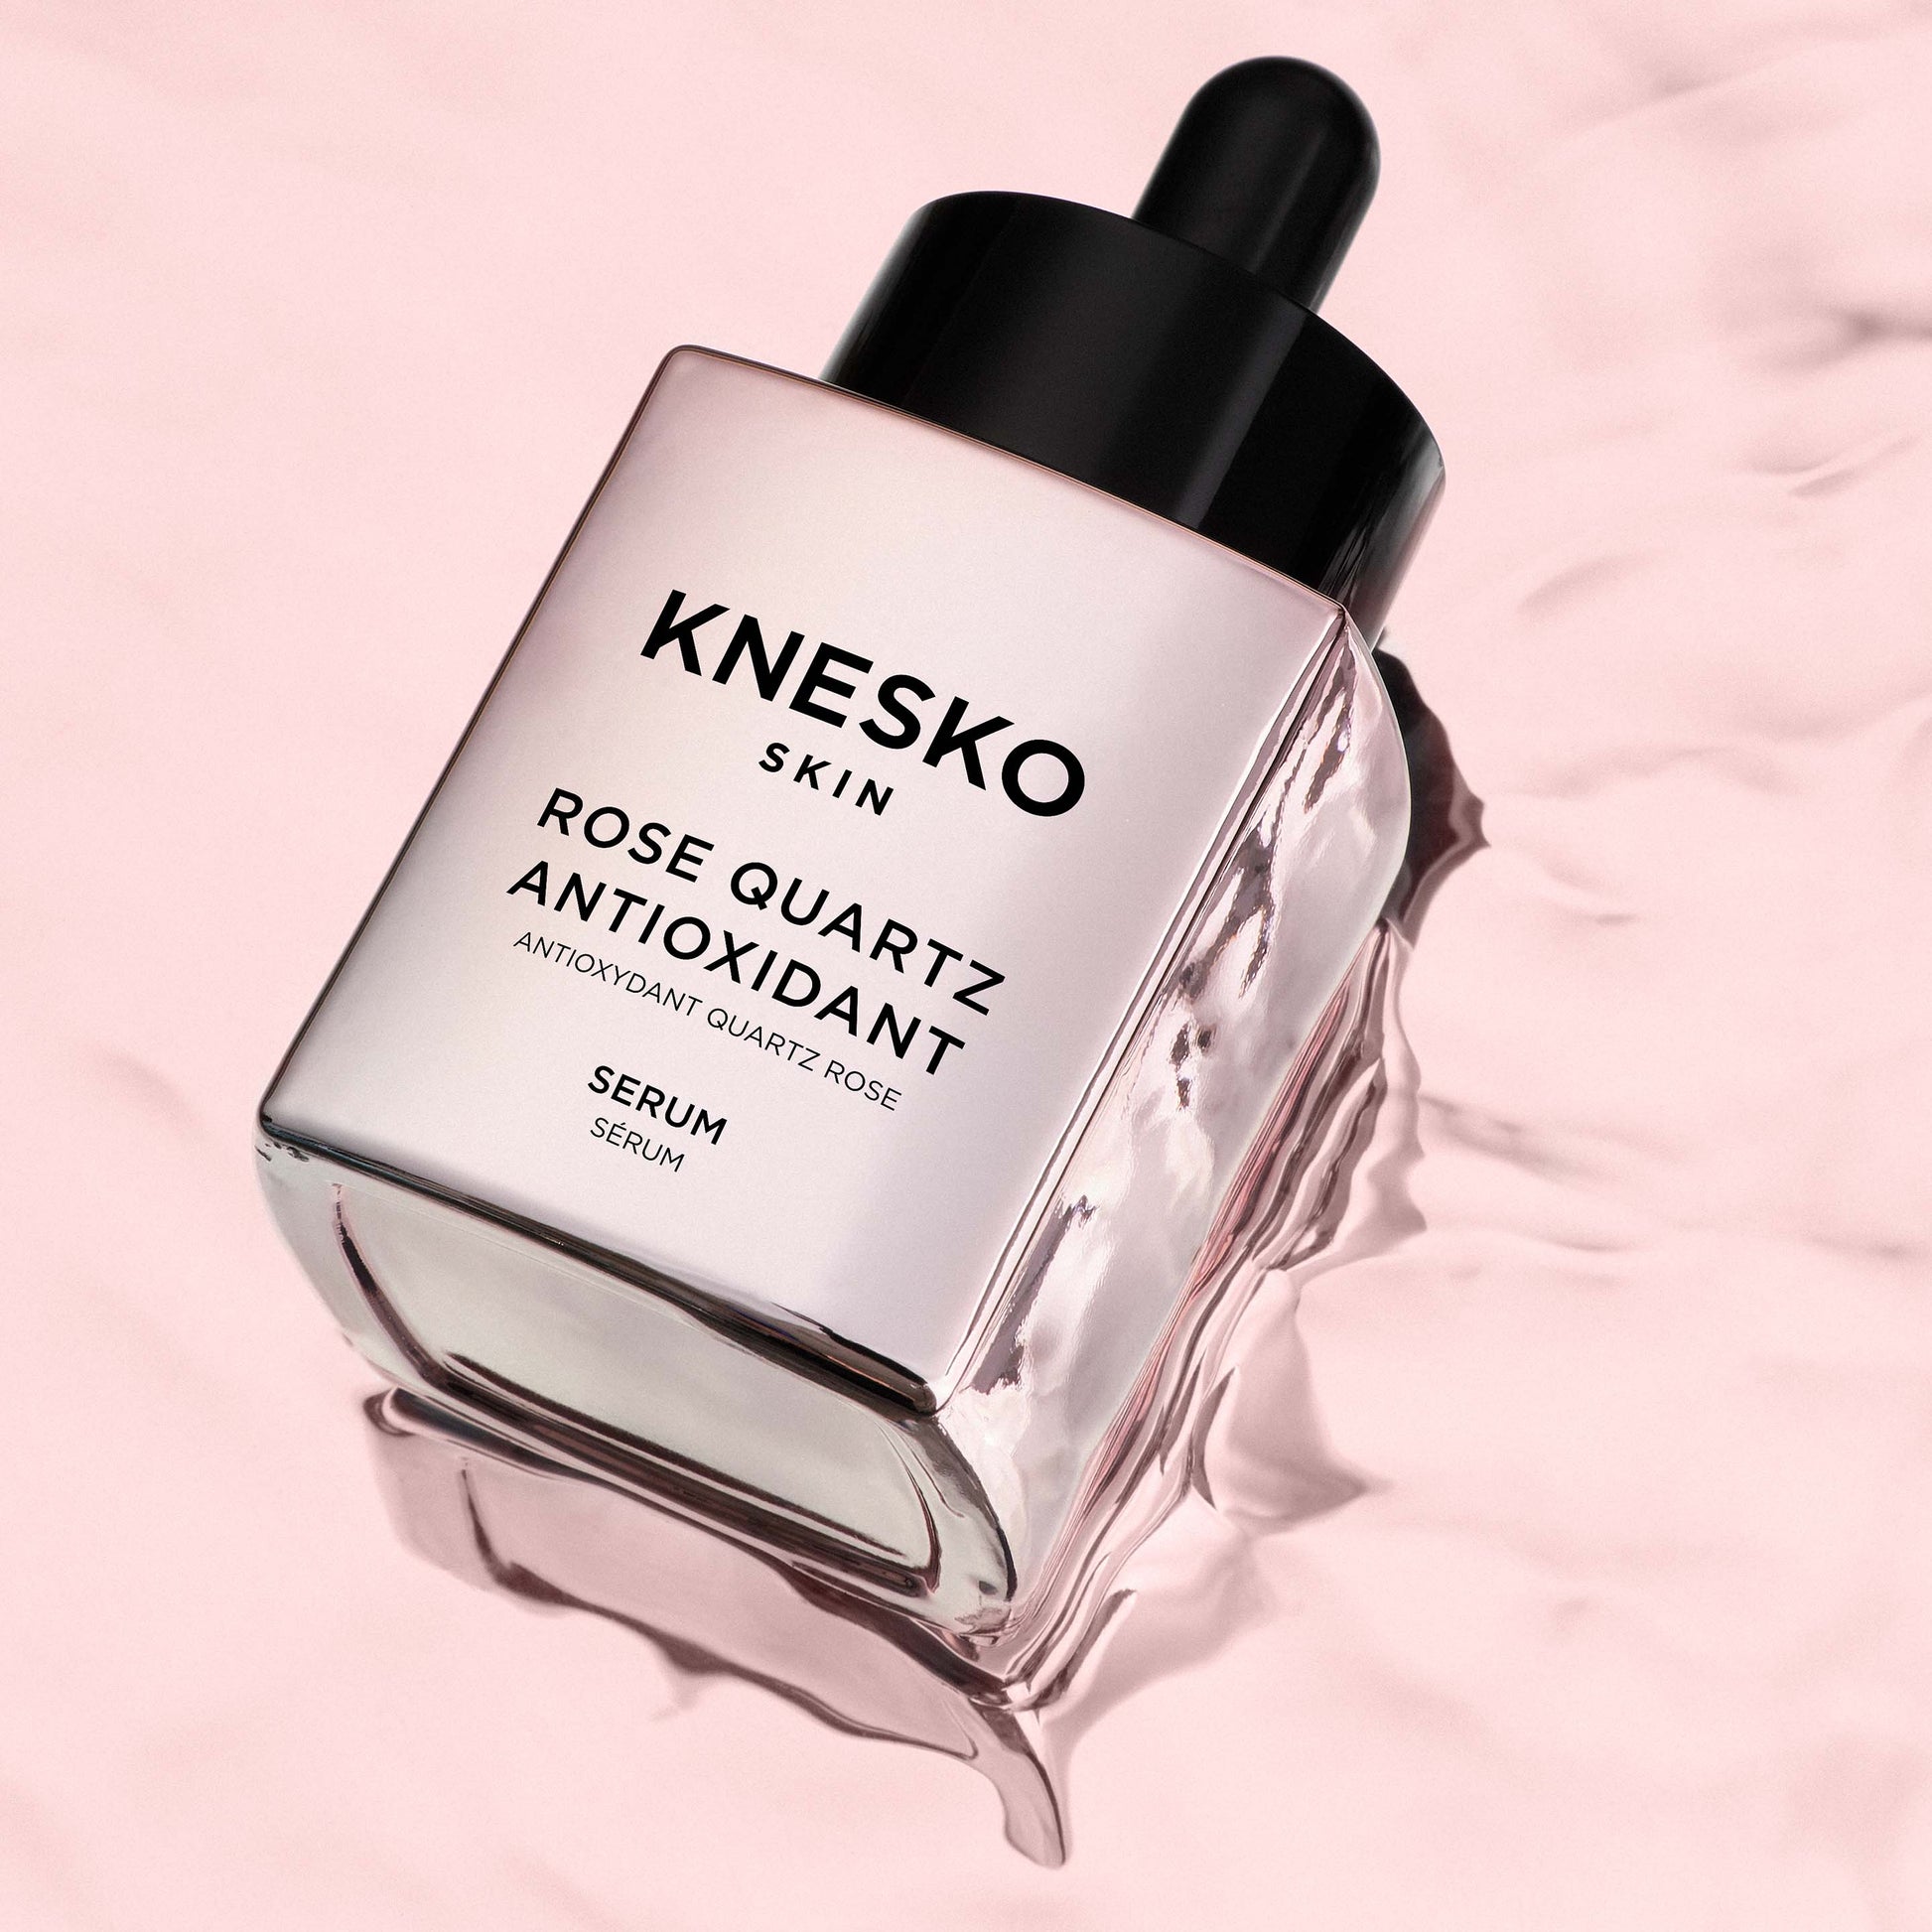 pink serum bottle that says knesko skin rose quartz antioxidant serum.